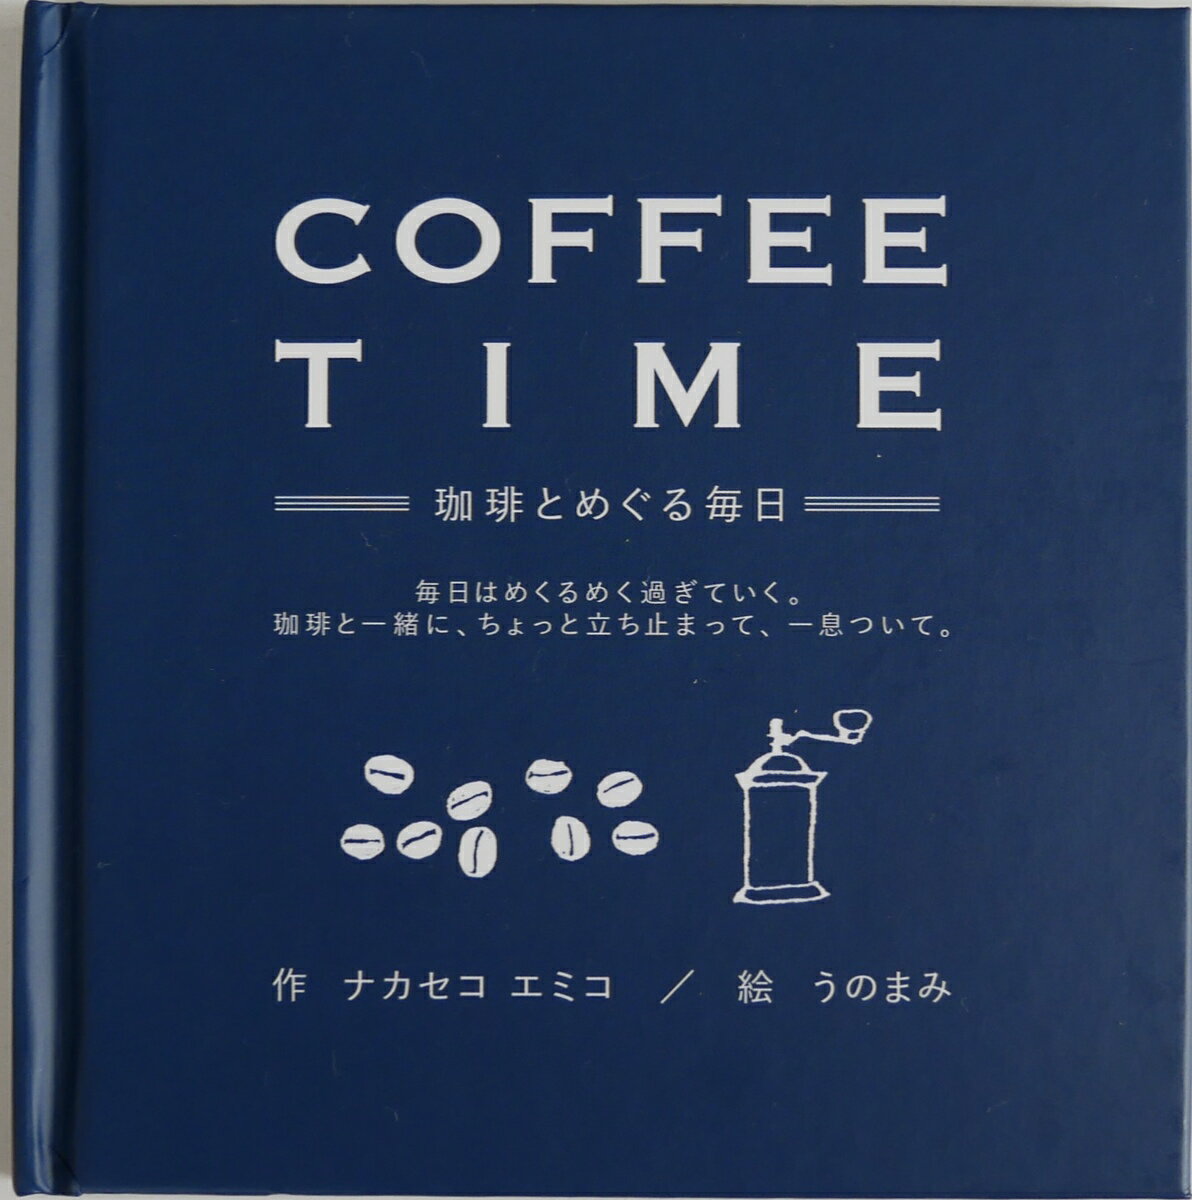 COFFEE TIME -珈琲とめぐる毎日- ナカセコエミコ 絵本 バイリンガル絵本 贈り物 プレゼント 自分へのプレゼント 英語教育 癒し 毎日頑張るあなたに Coffee time プチギフト ニジノ絵本屋